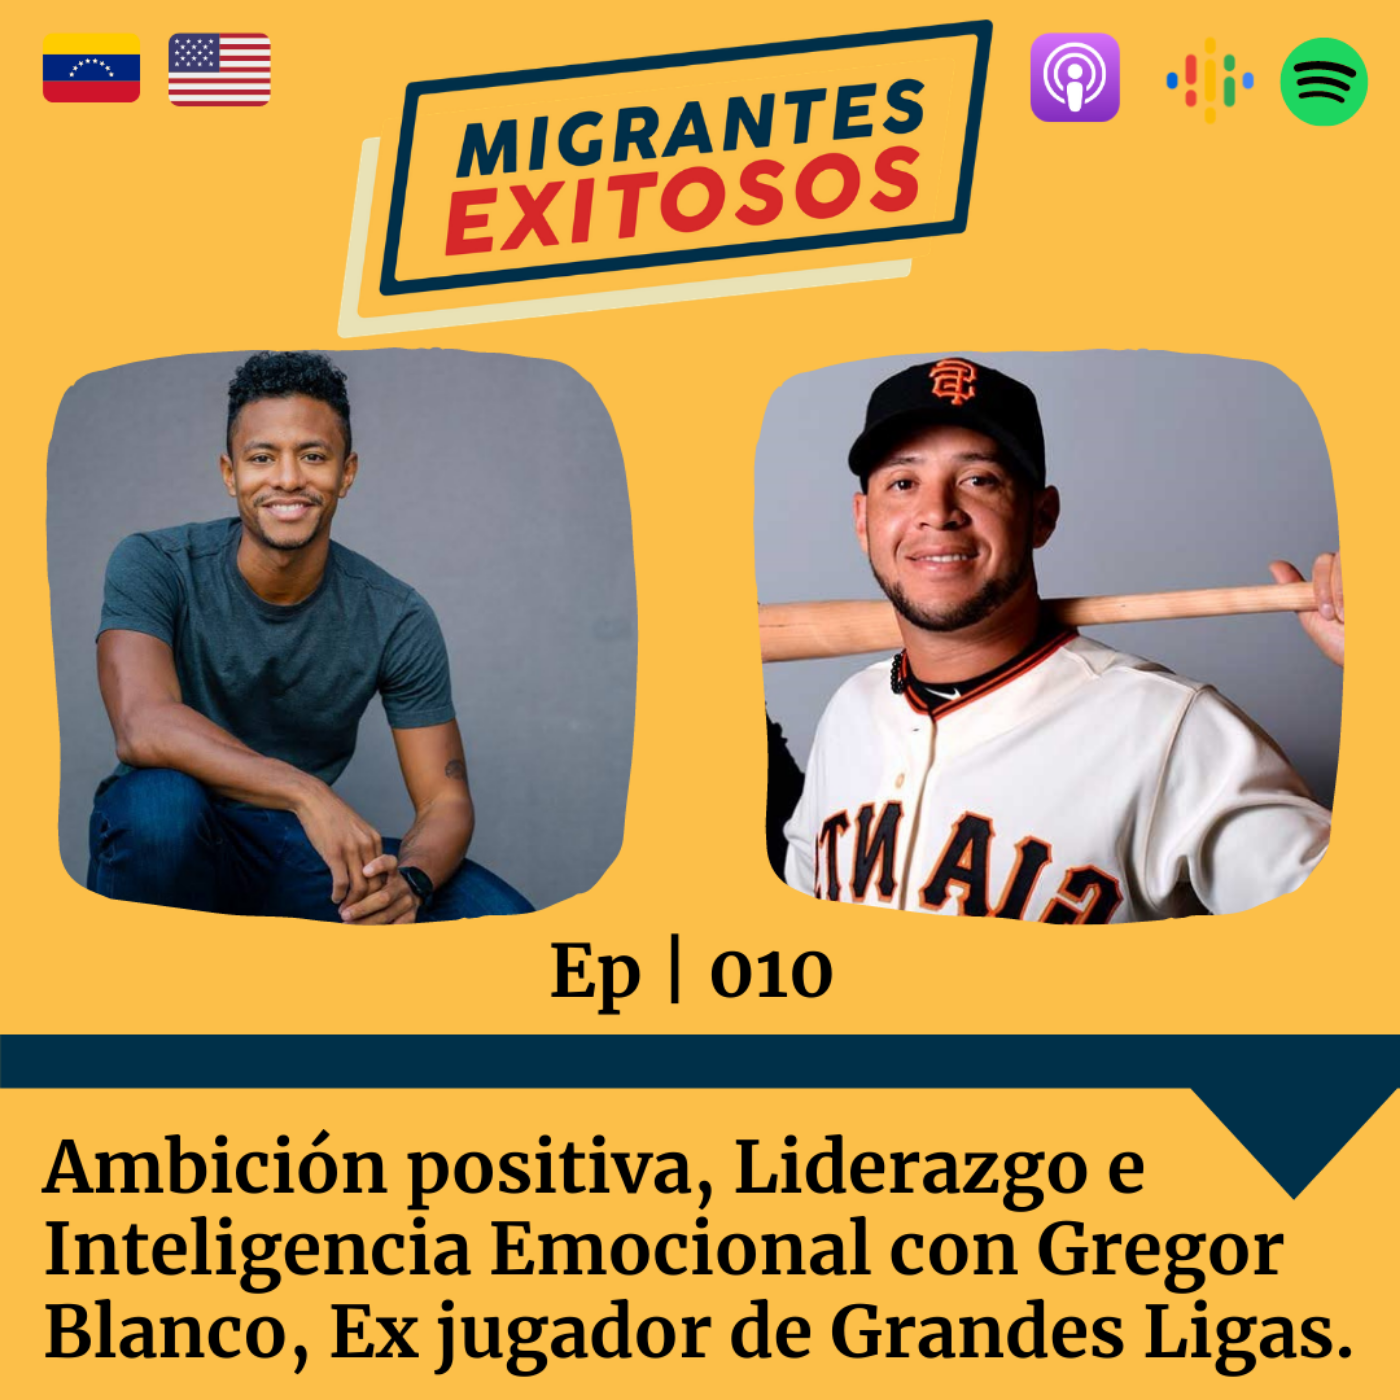 Artwork for podcast Migrantes Exitosos